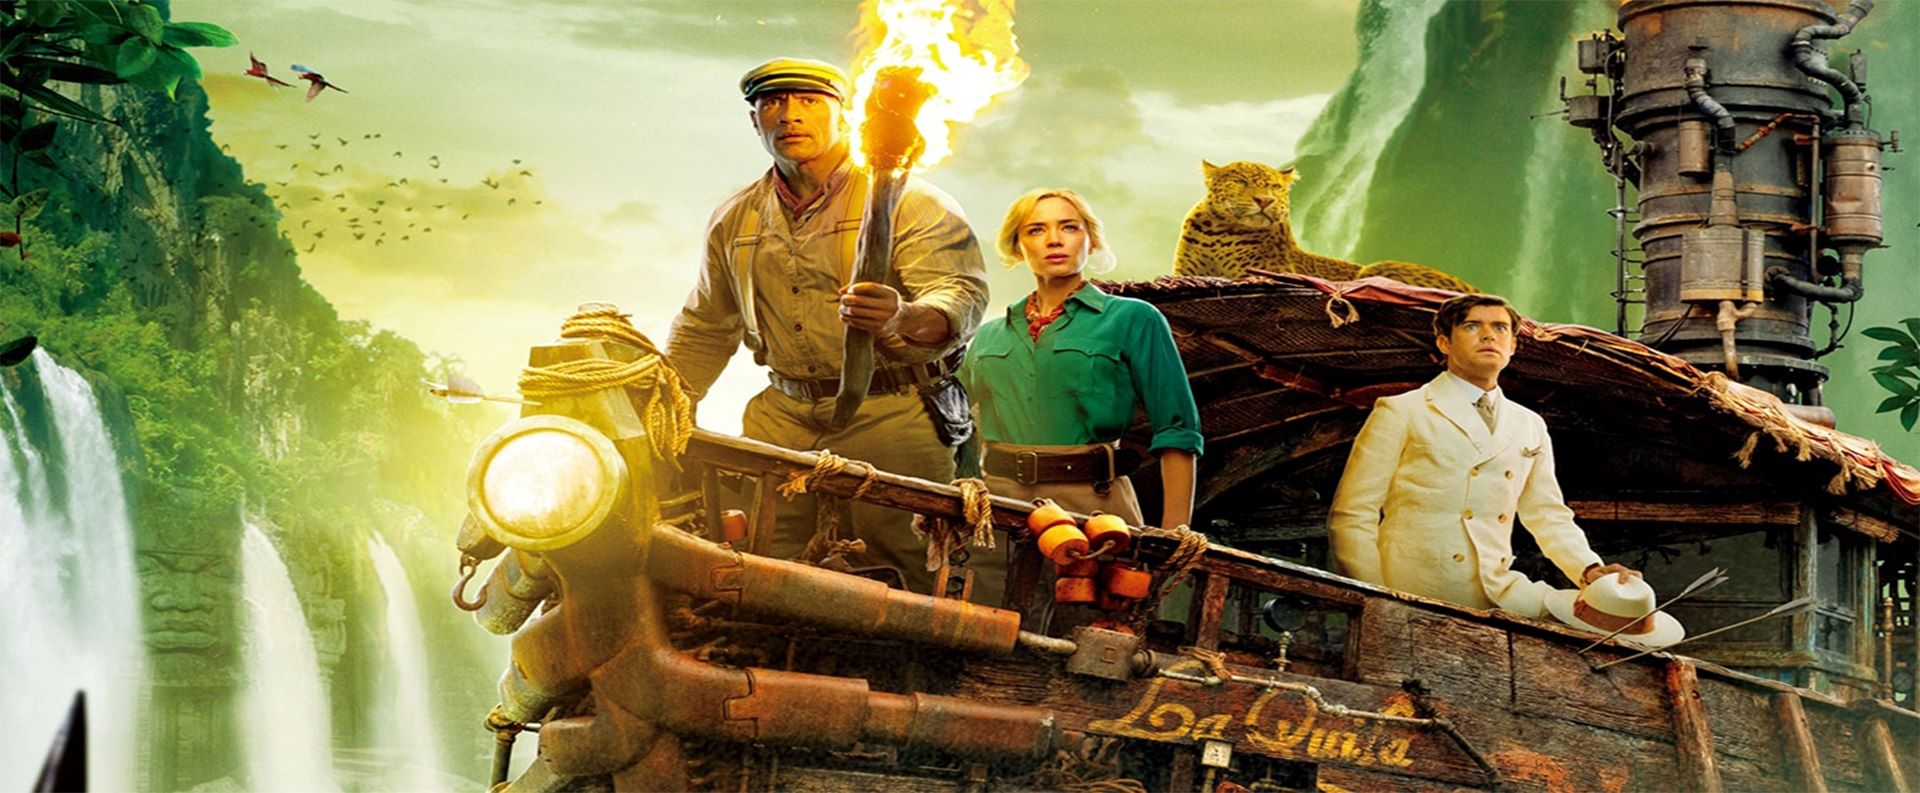 EZ Movie ดูหนังฟรี ไม่มีโฆษณา ภาพโลโก้ Jungle Cruise (2021) ผจญภัยล่องป่ามหัศจรรย์